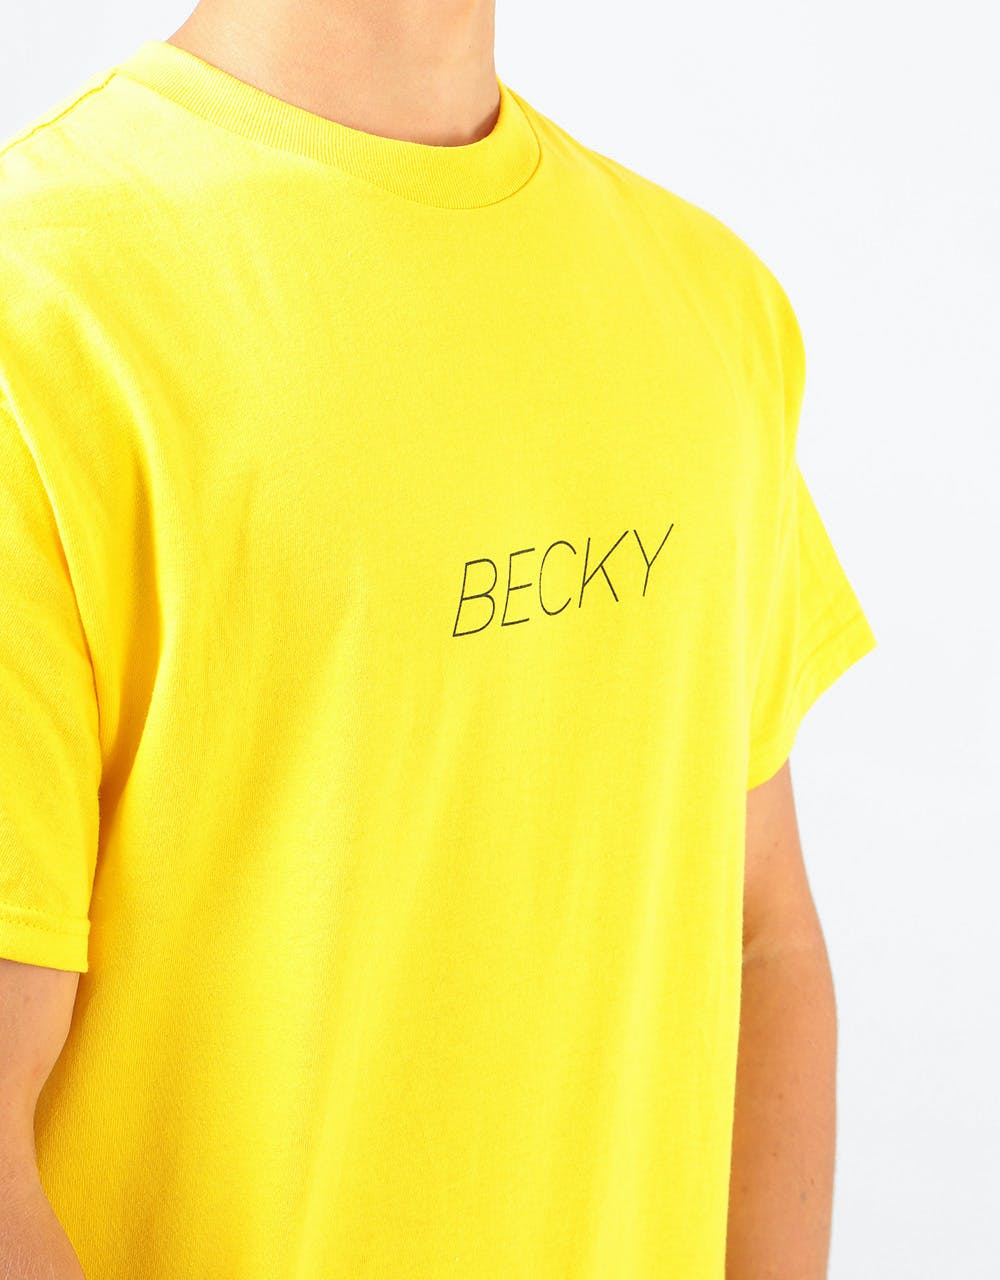 Becky Factory Legs T-Shirt - Yellow